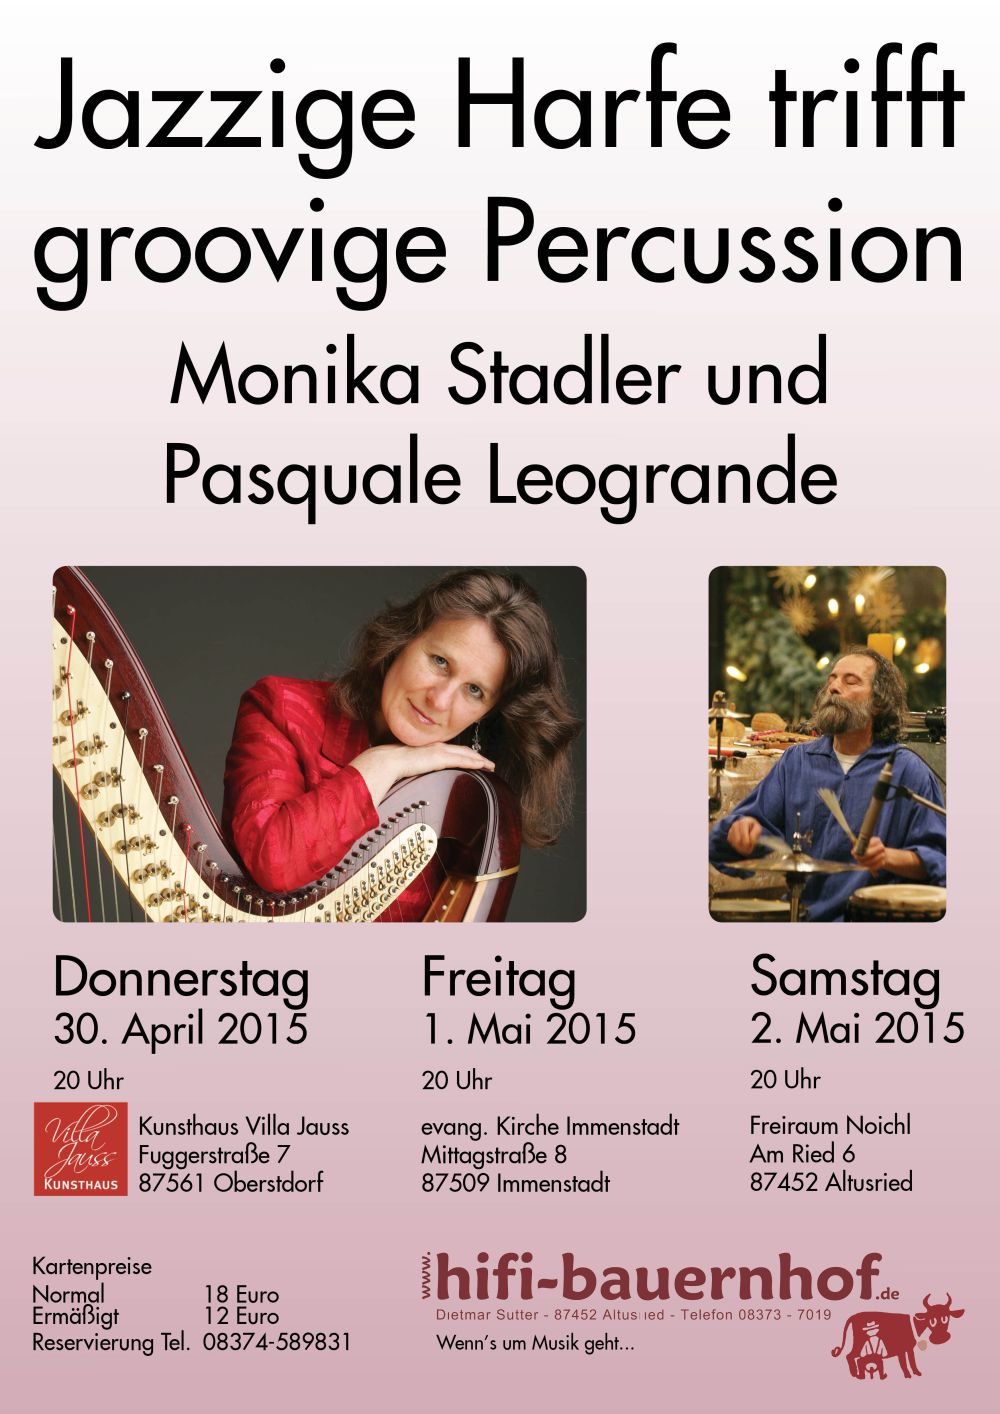 Einzigartiges Konzerterlebnis mit dem Hifi-Bauernhof Monika Stadler und Pasquale Leogrande